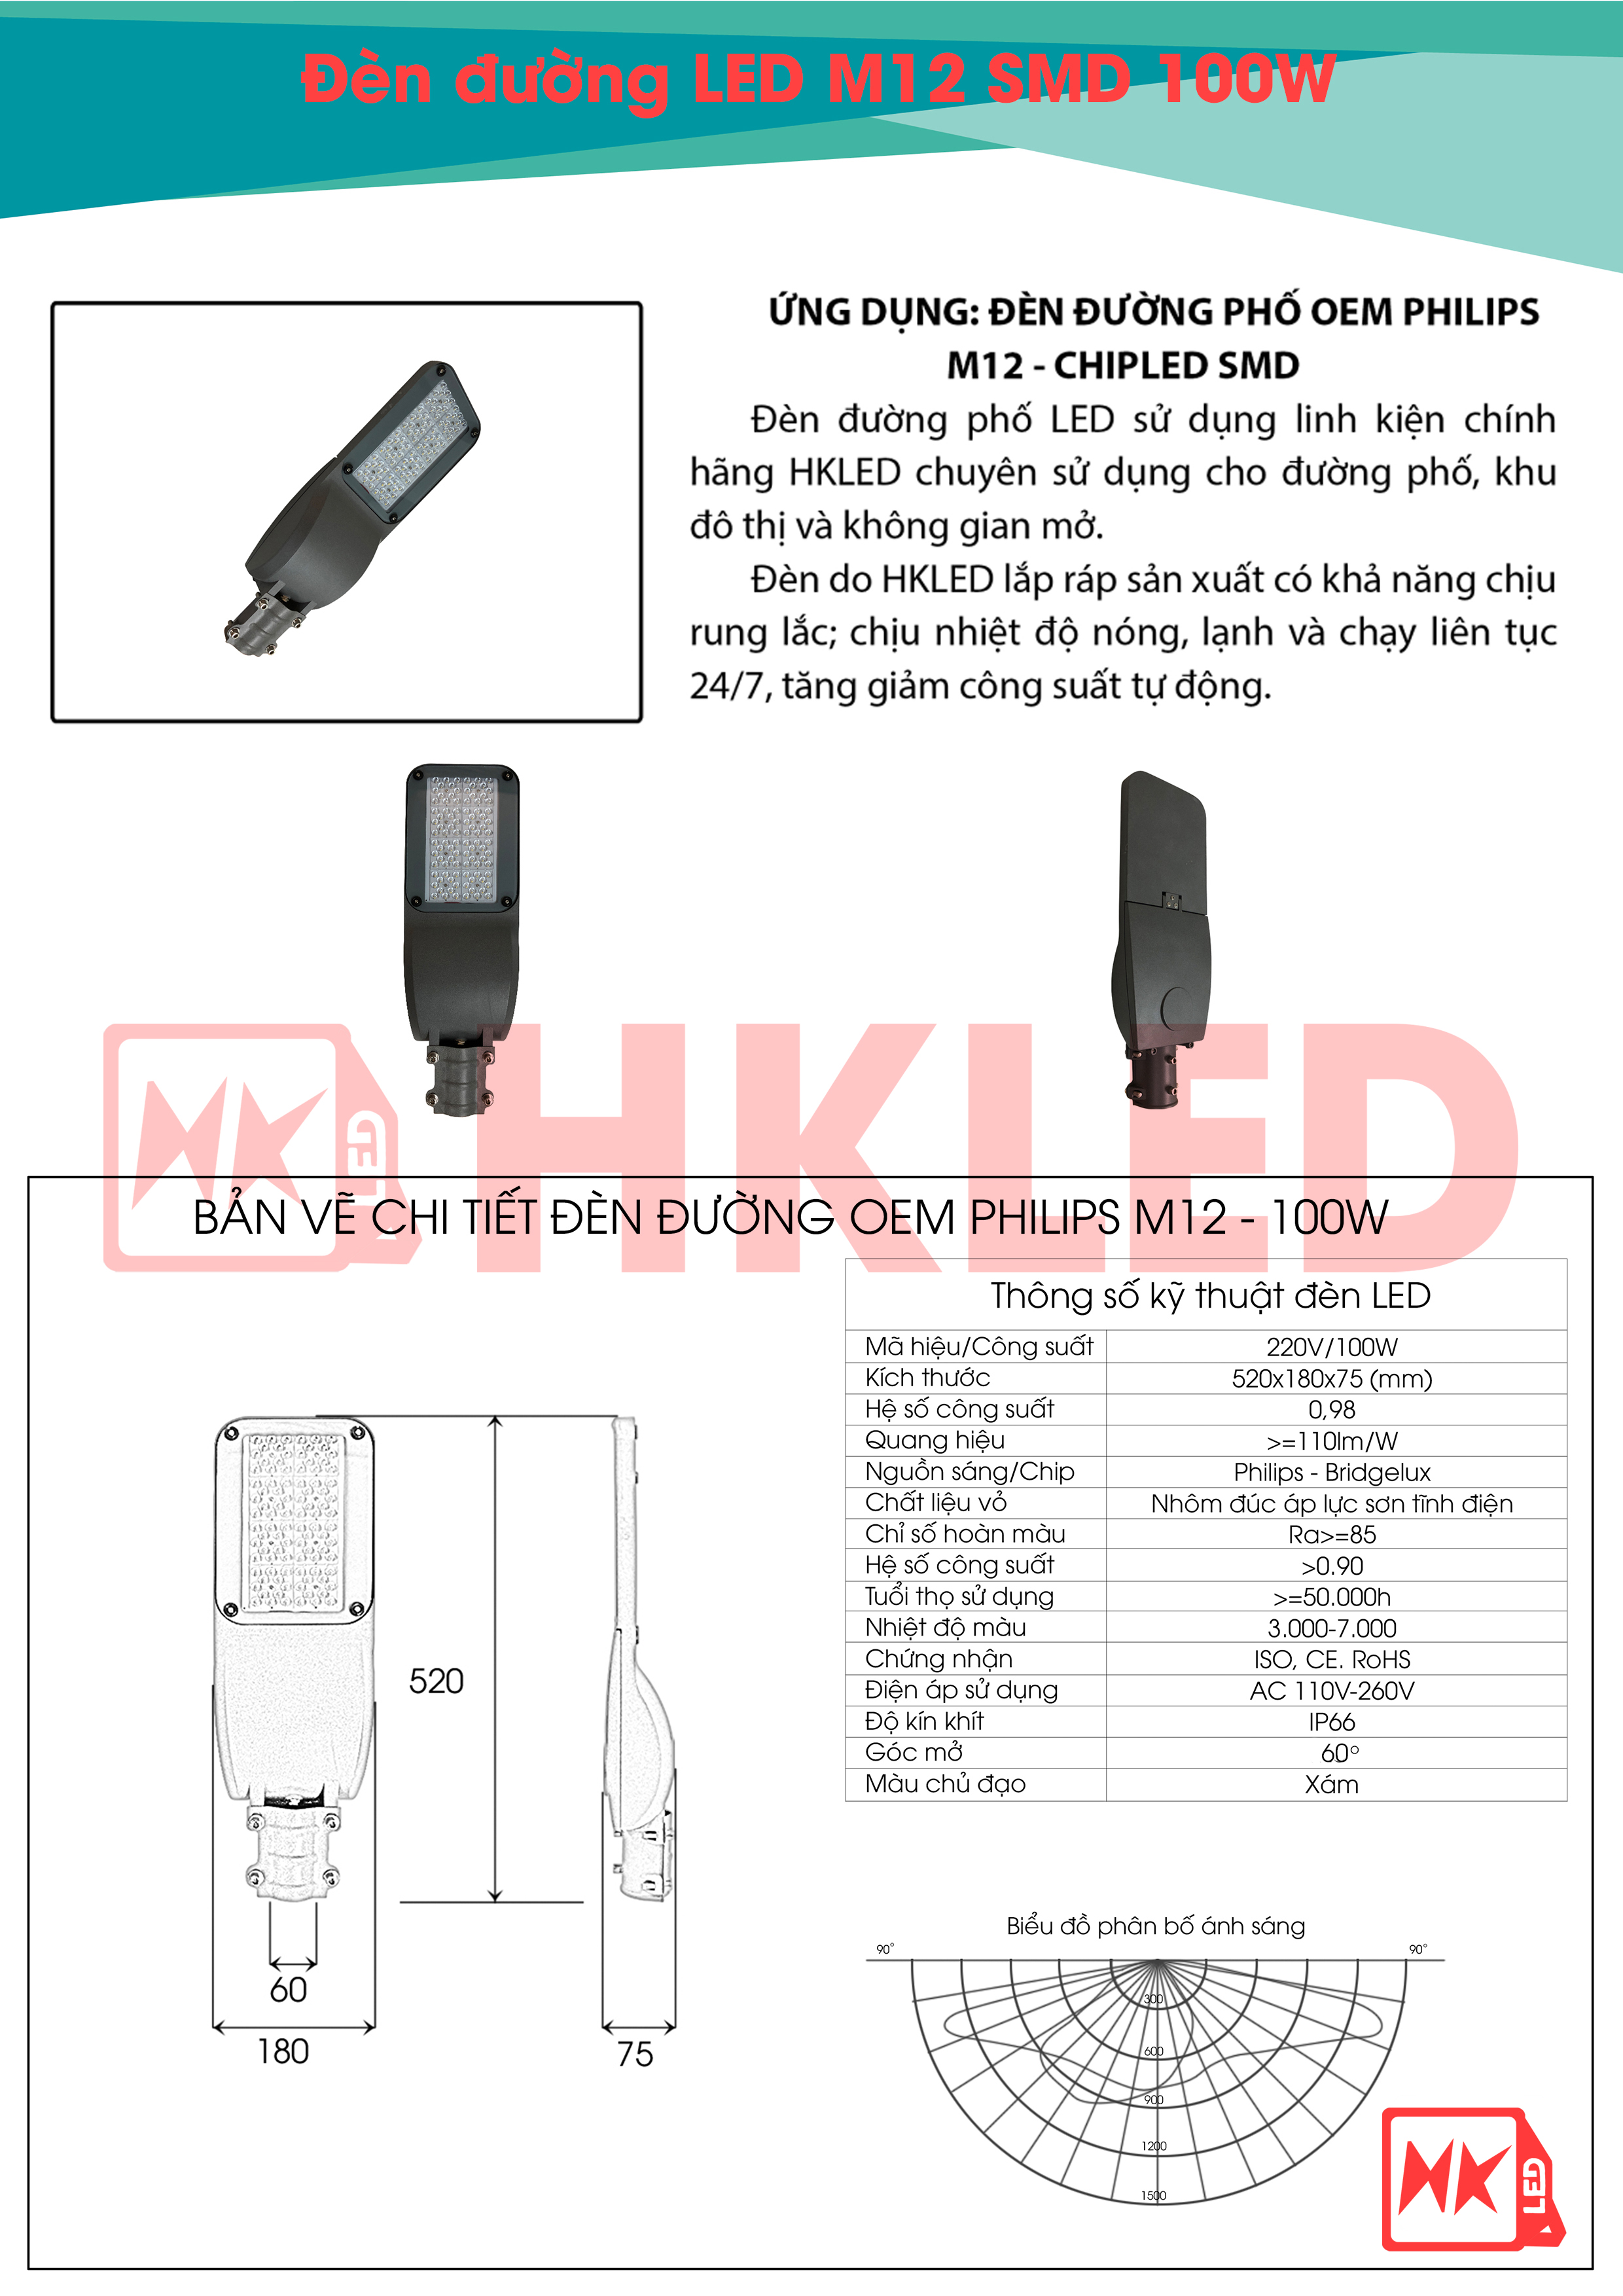 Ứng dụng, bản vẽ chi tiết và thông số kỹ thuật đèn đường LED OEM Philips m12 100W